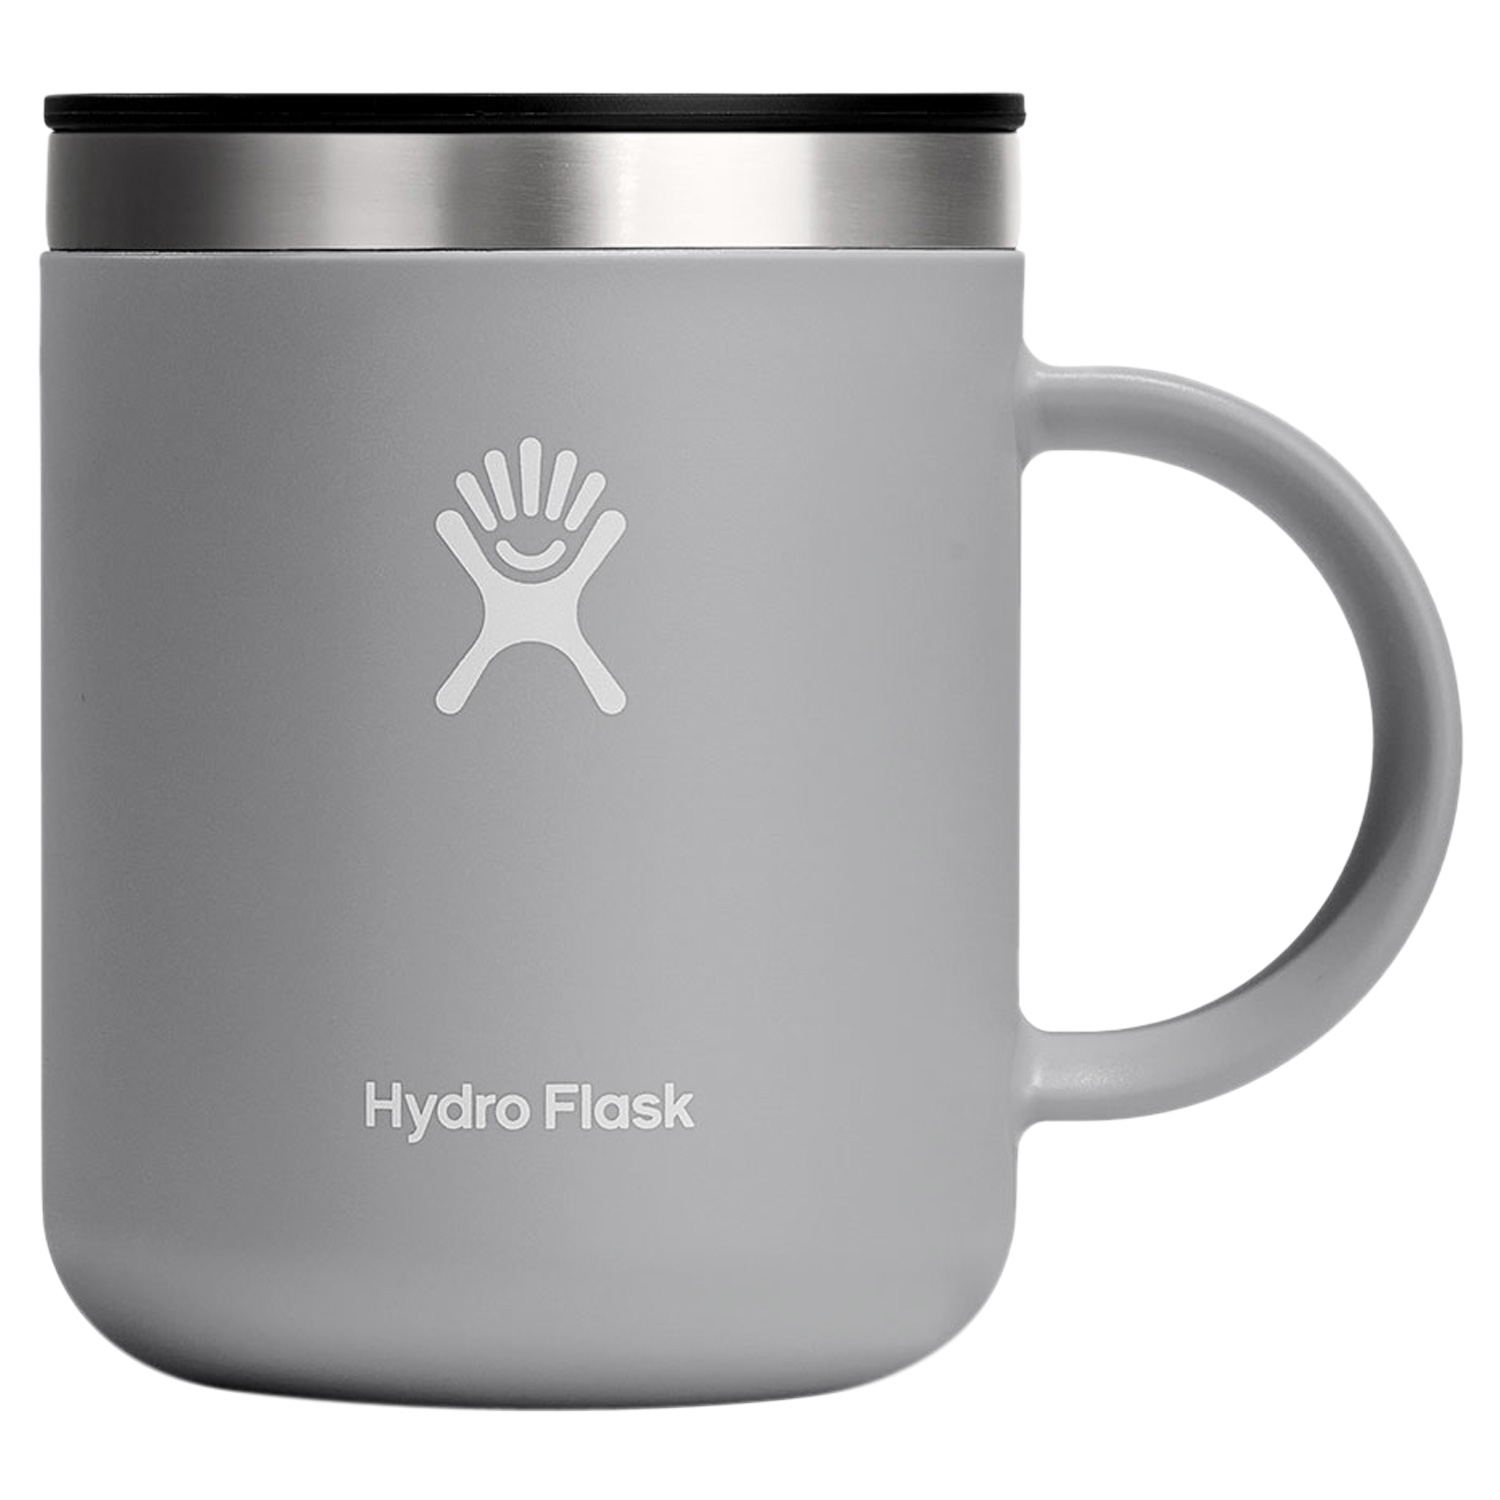 ハイドロフラスク Hydro Flask コーヒーマグ マグカップ コーヒーカップ 保温 ステンレス...